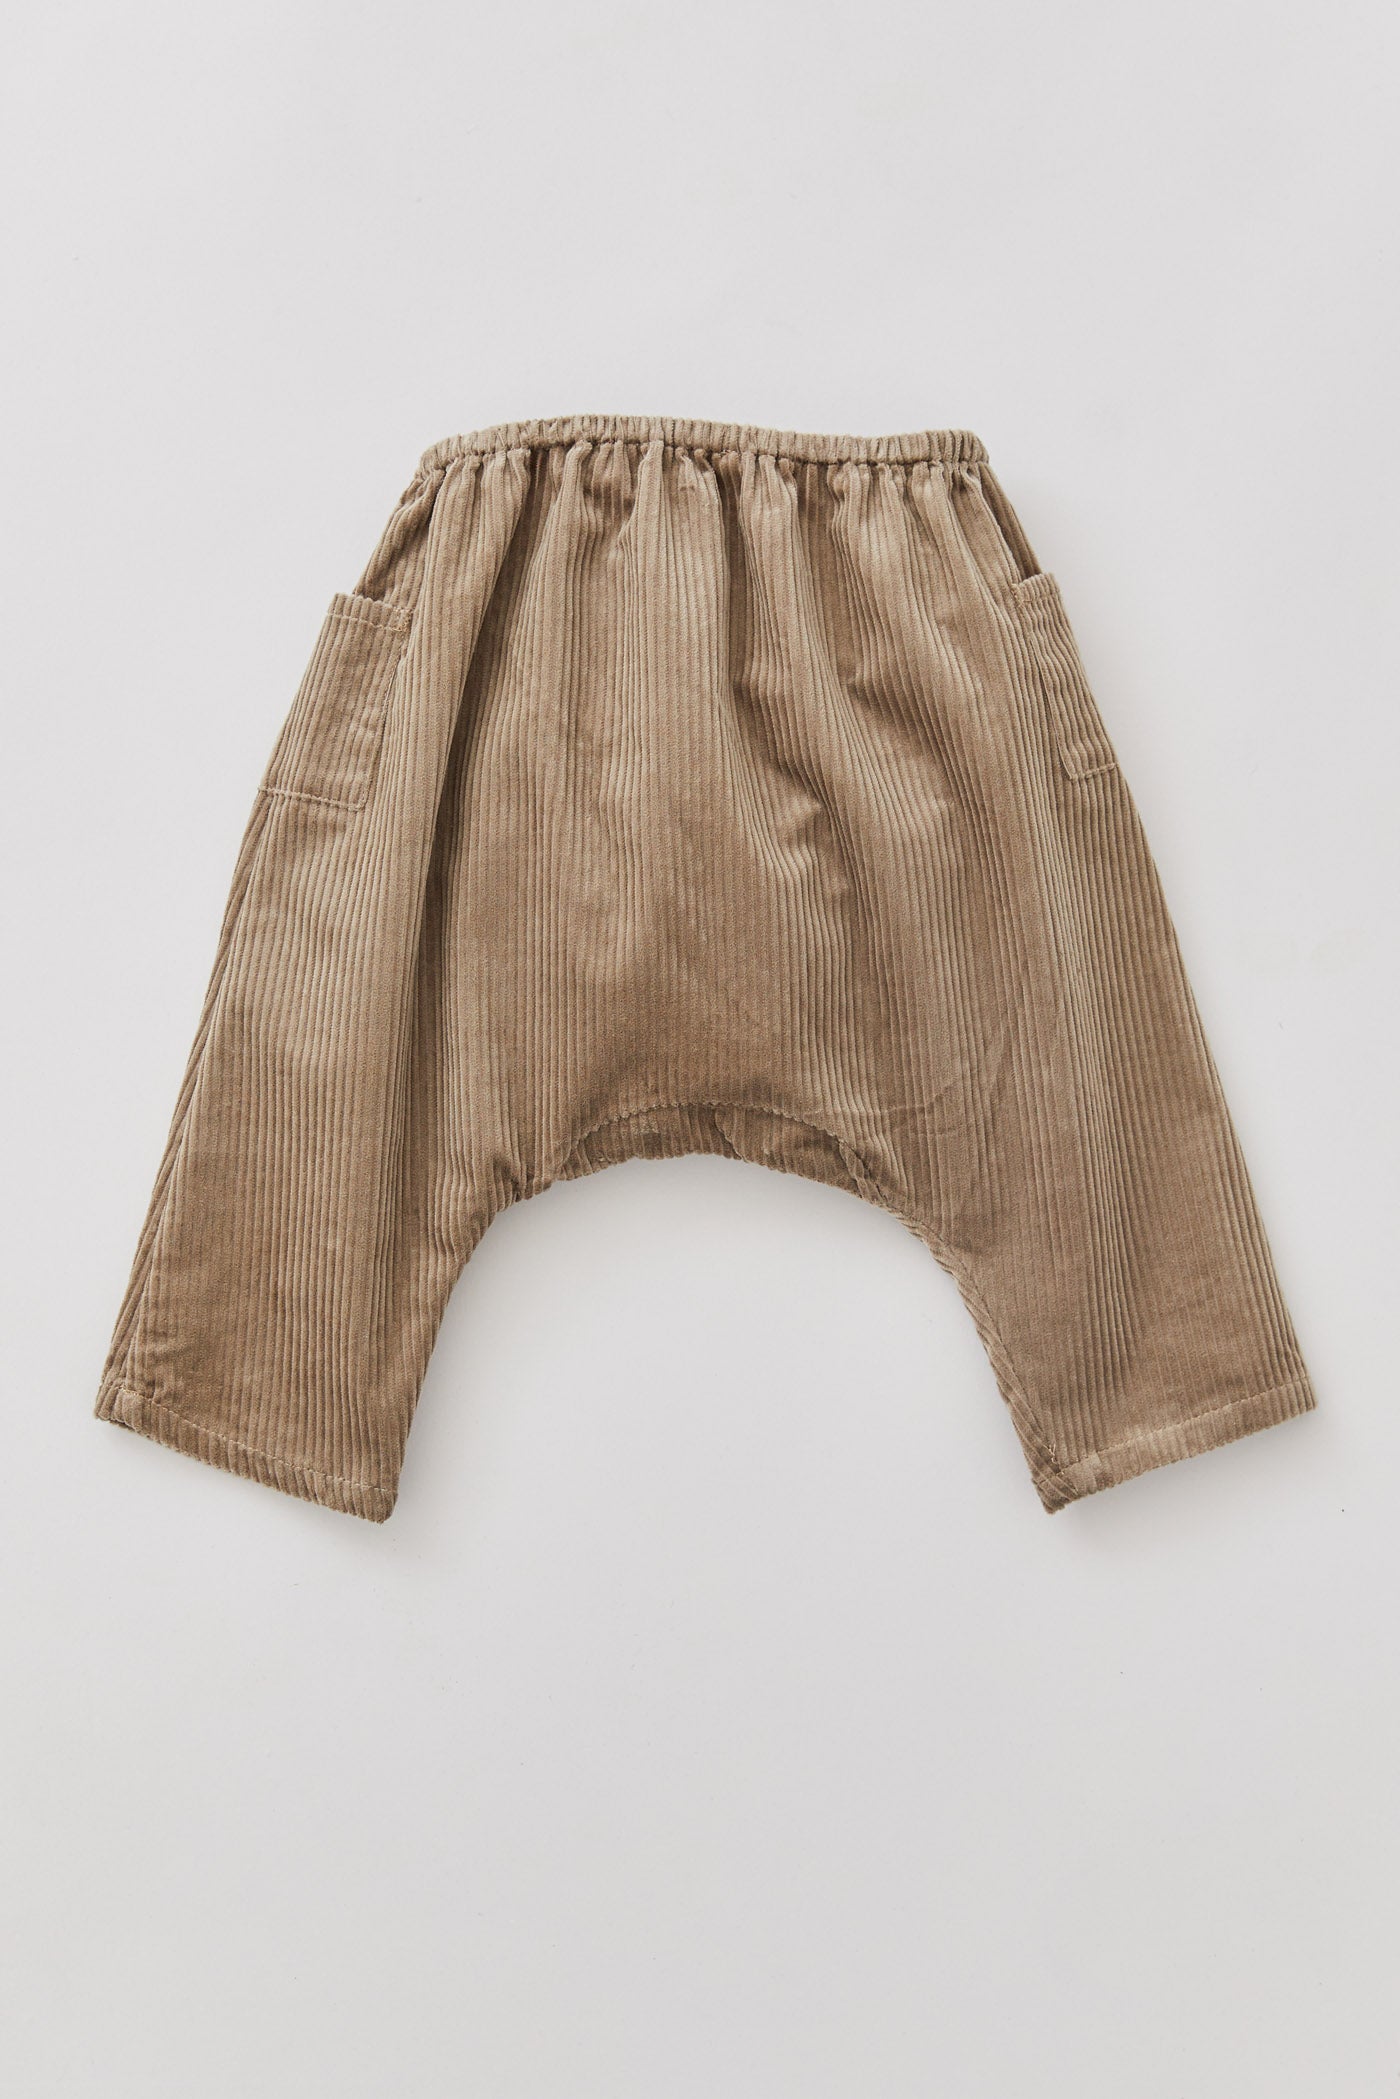 Baby Apple Trousers Brown Corduroy - Designed by Ingrid Lewis - Strawberries & Cream